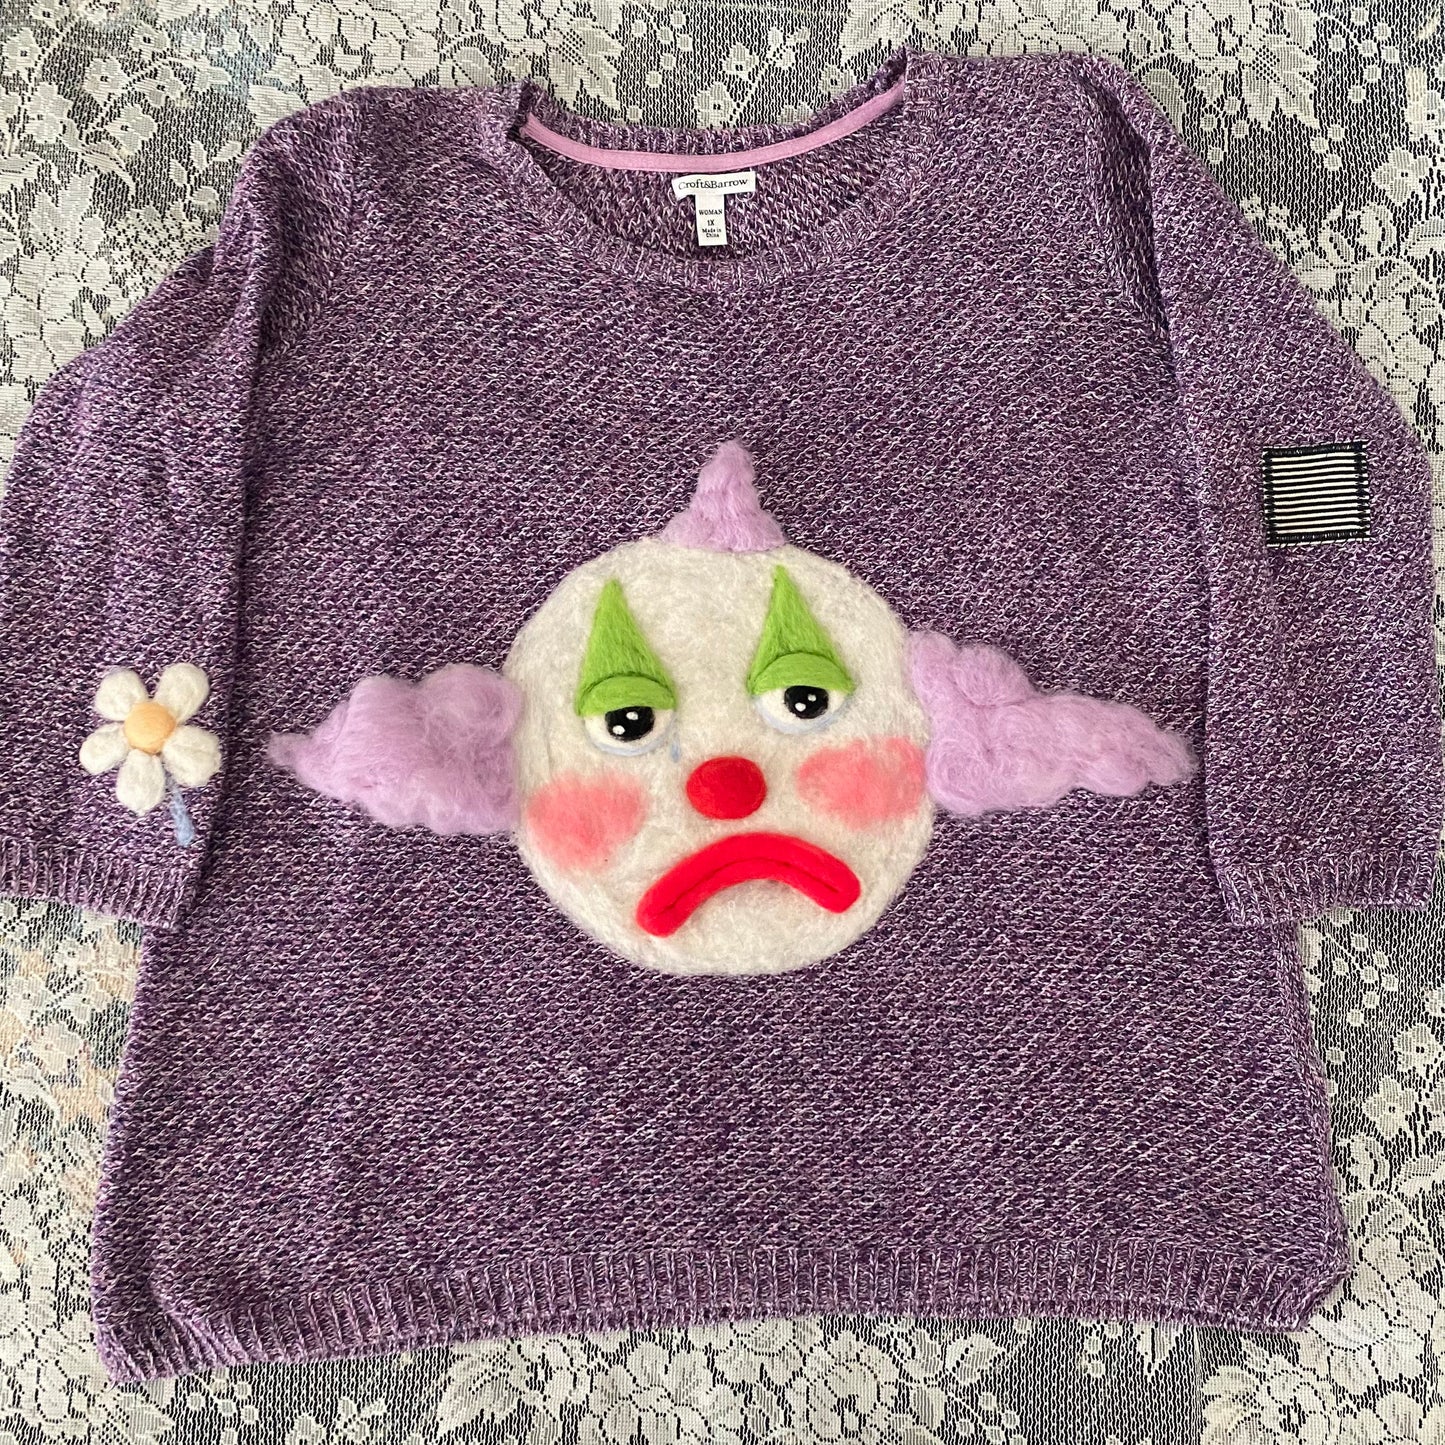 Clown (soft sculpture) Sweater